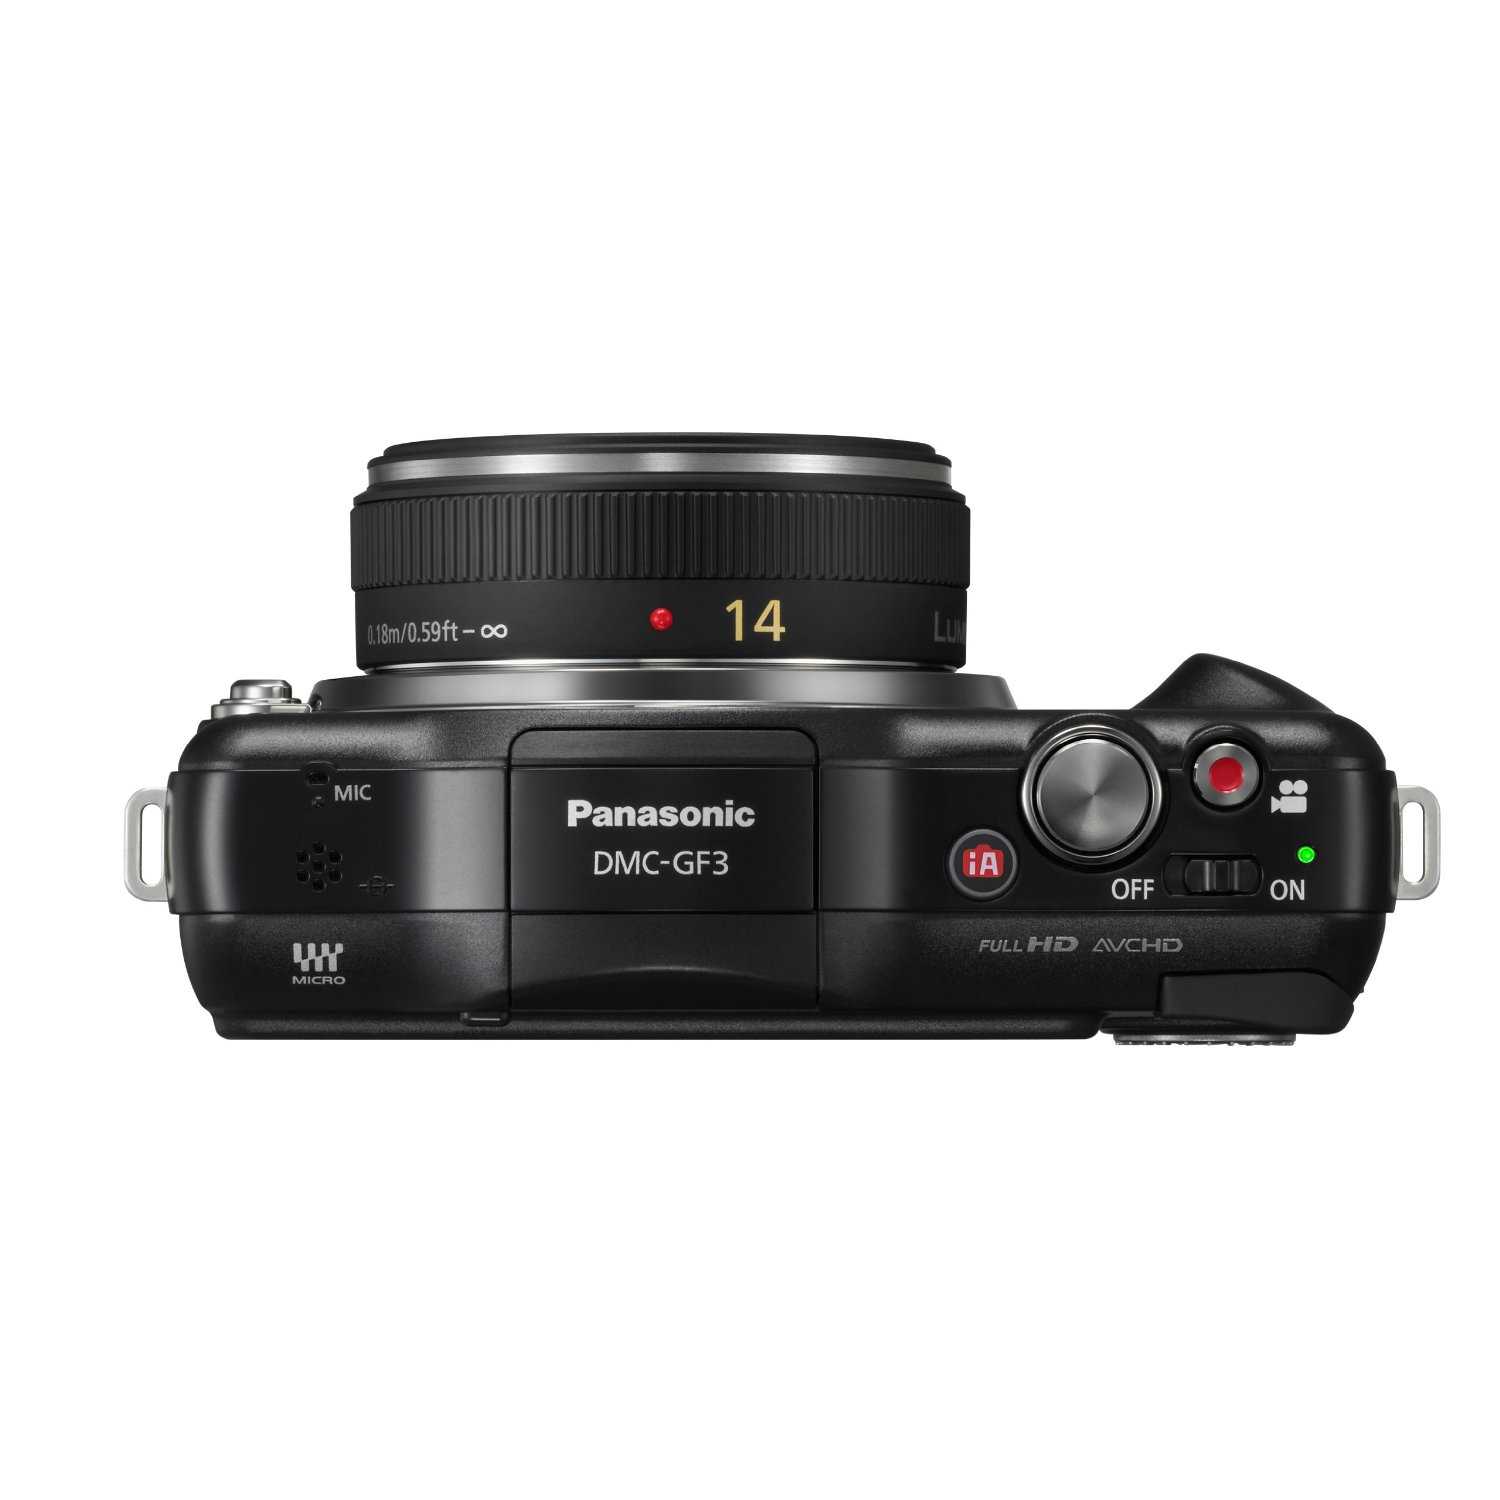 Panasonic lumix dmc-gf3 kit - купить , скидки, цена, отзывы, обзор, характеристики - фотоаппараты цифровые